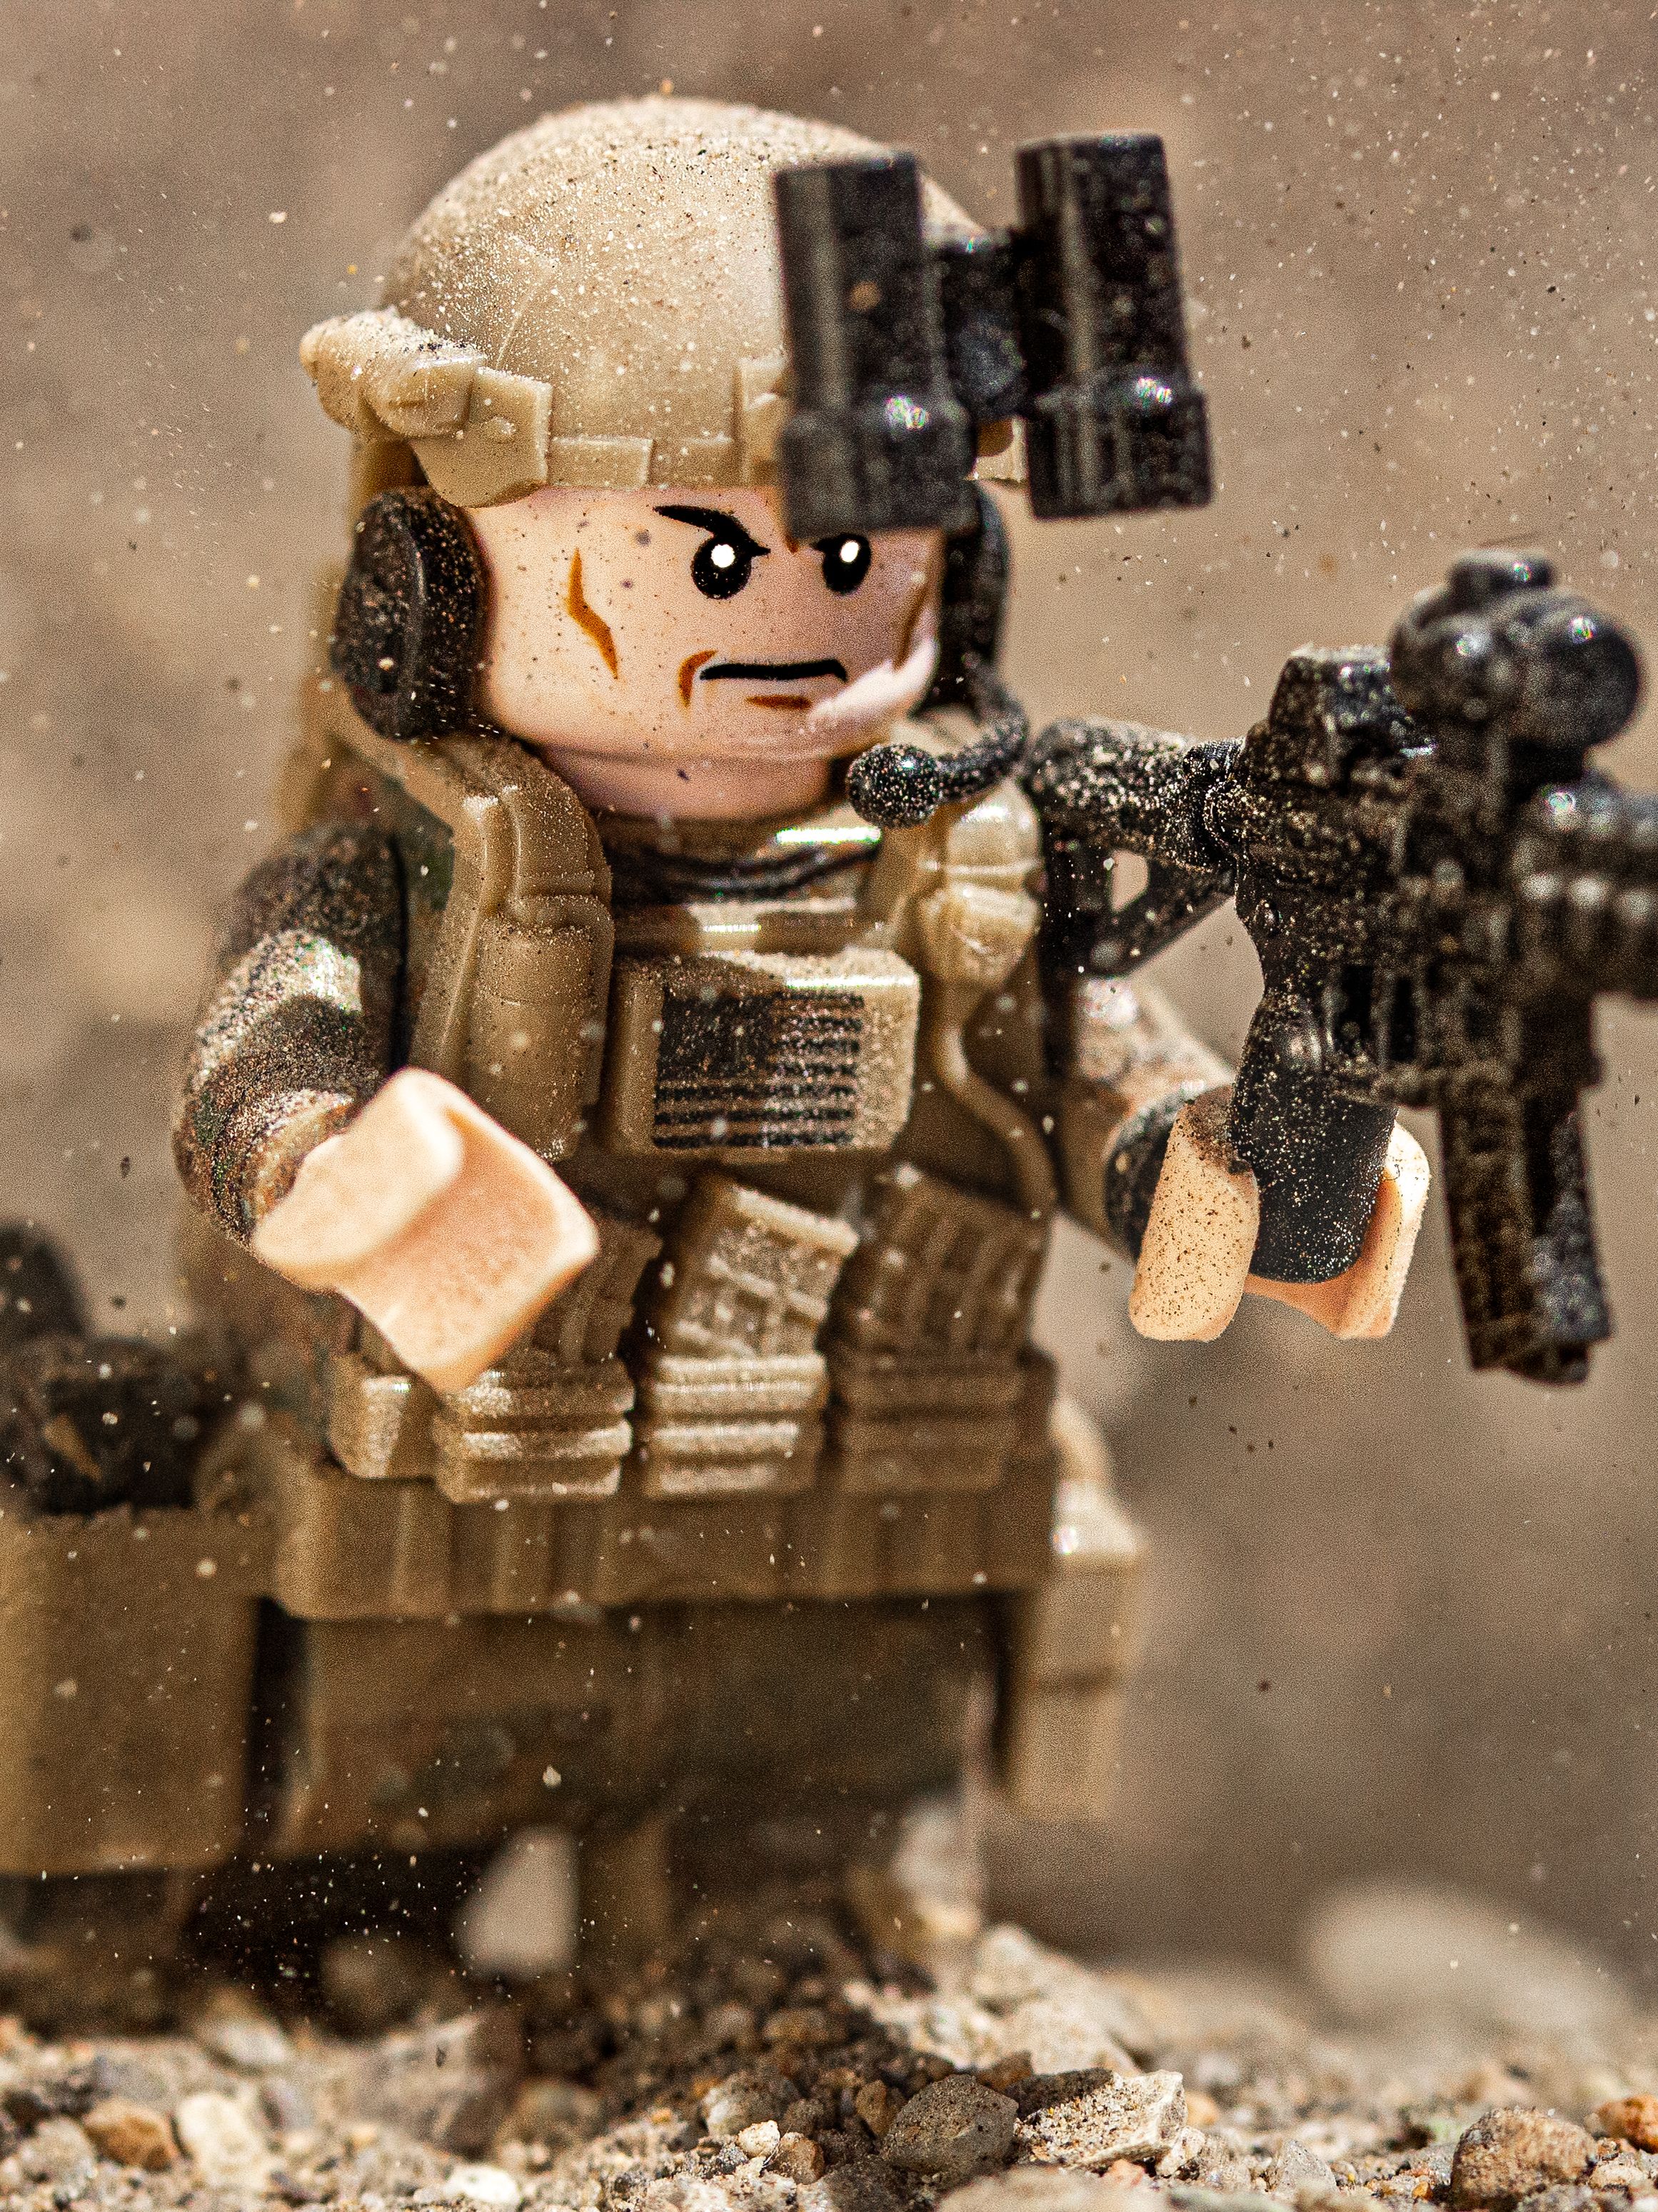 201127125610-battle-bricks-soldier-1.jpeg